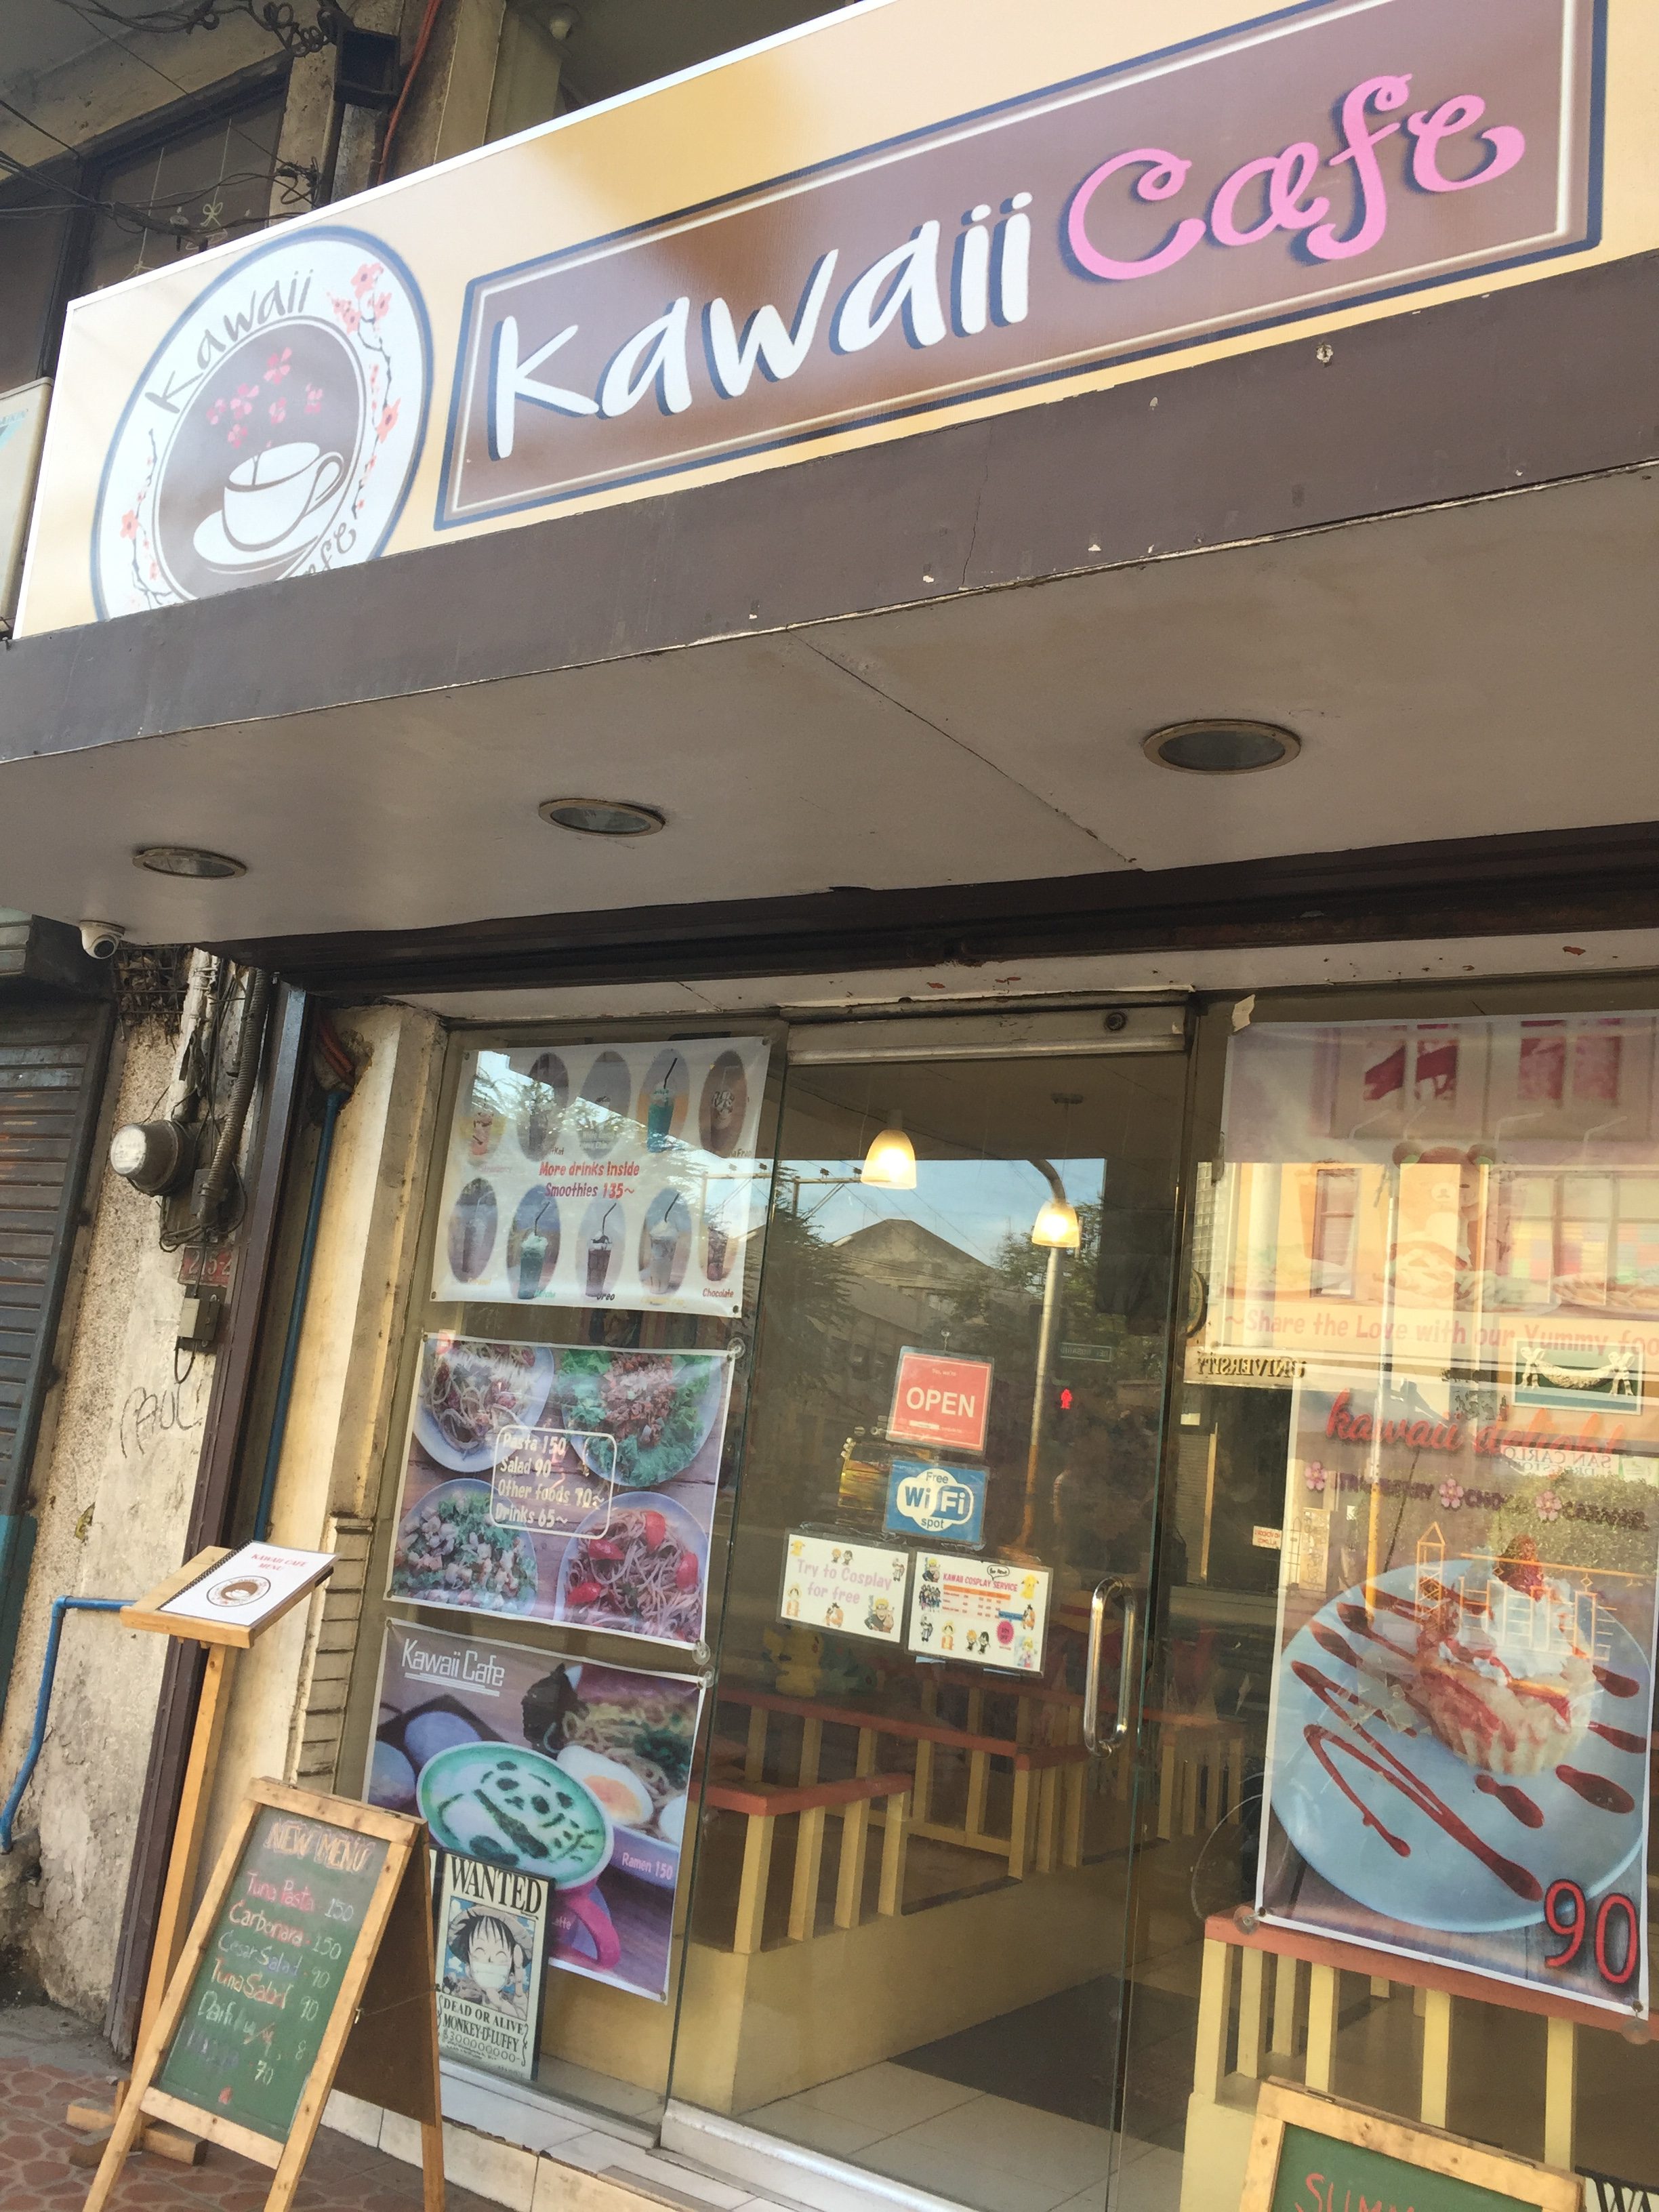 日本人の若者が経営しているフィリピン人に大人気のカワイイ カフェ Kawaii Cafe に行ってみた フィリピン最新情報ブログ